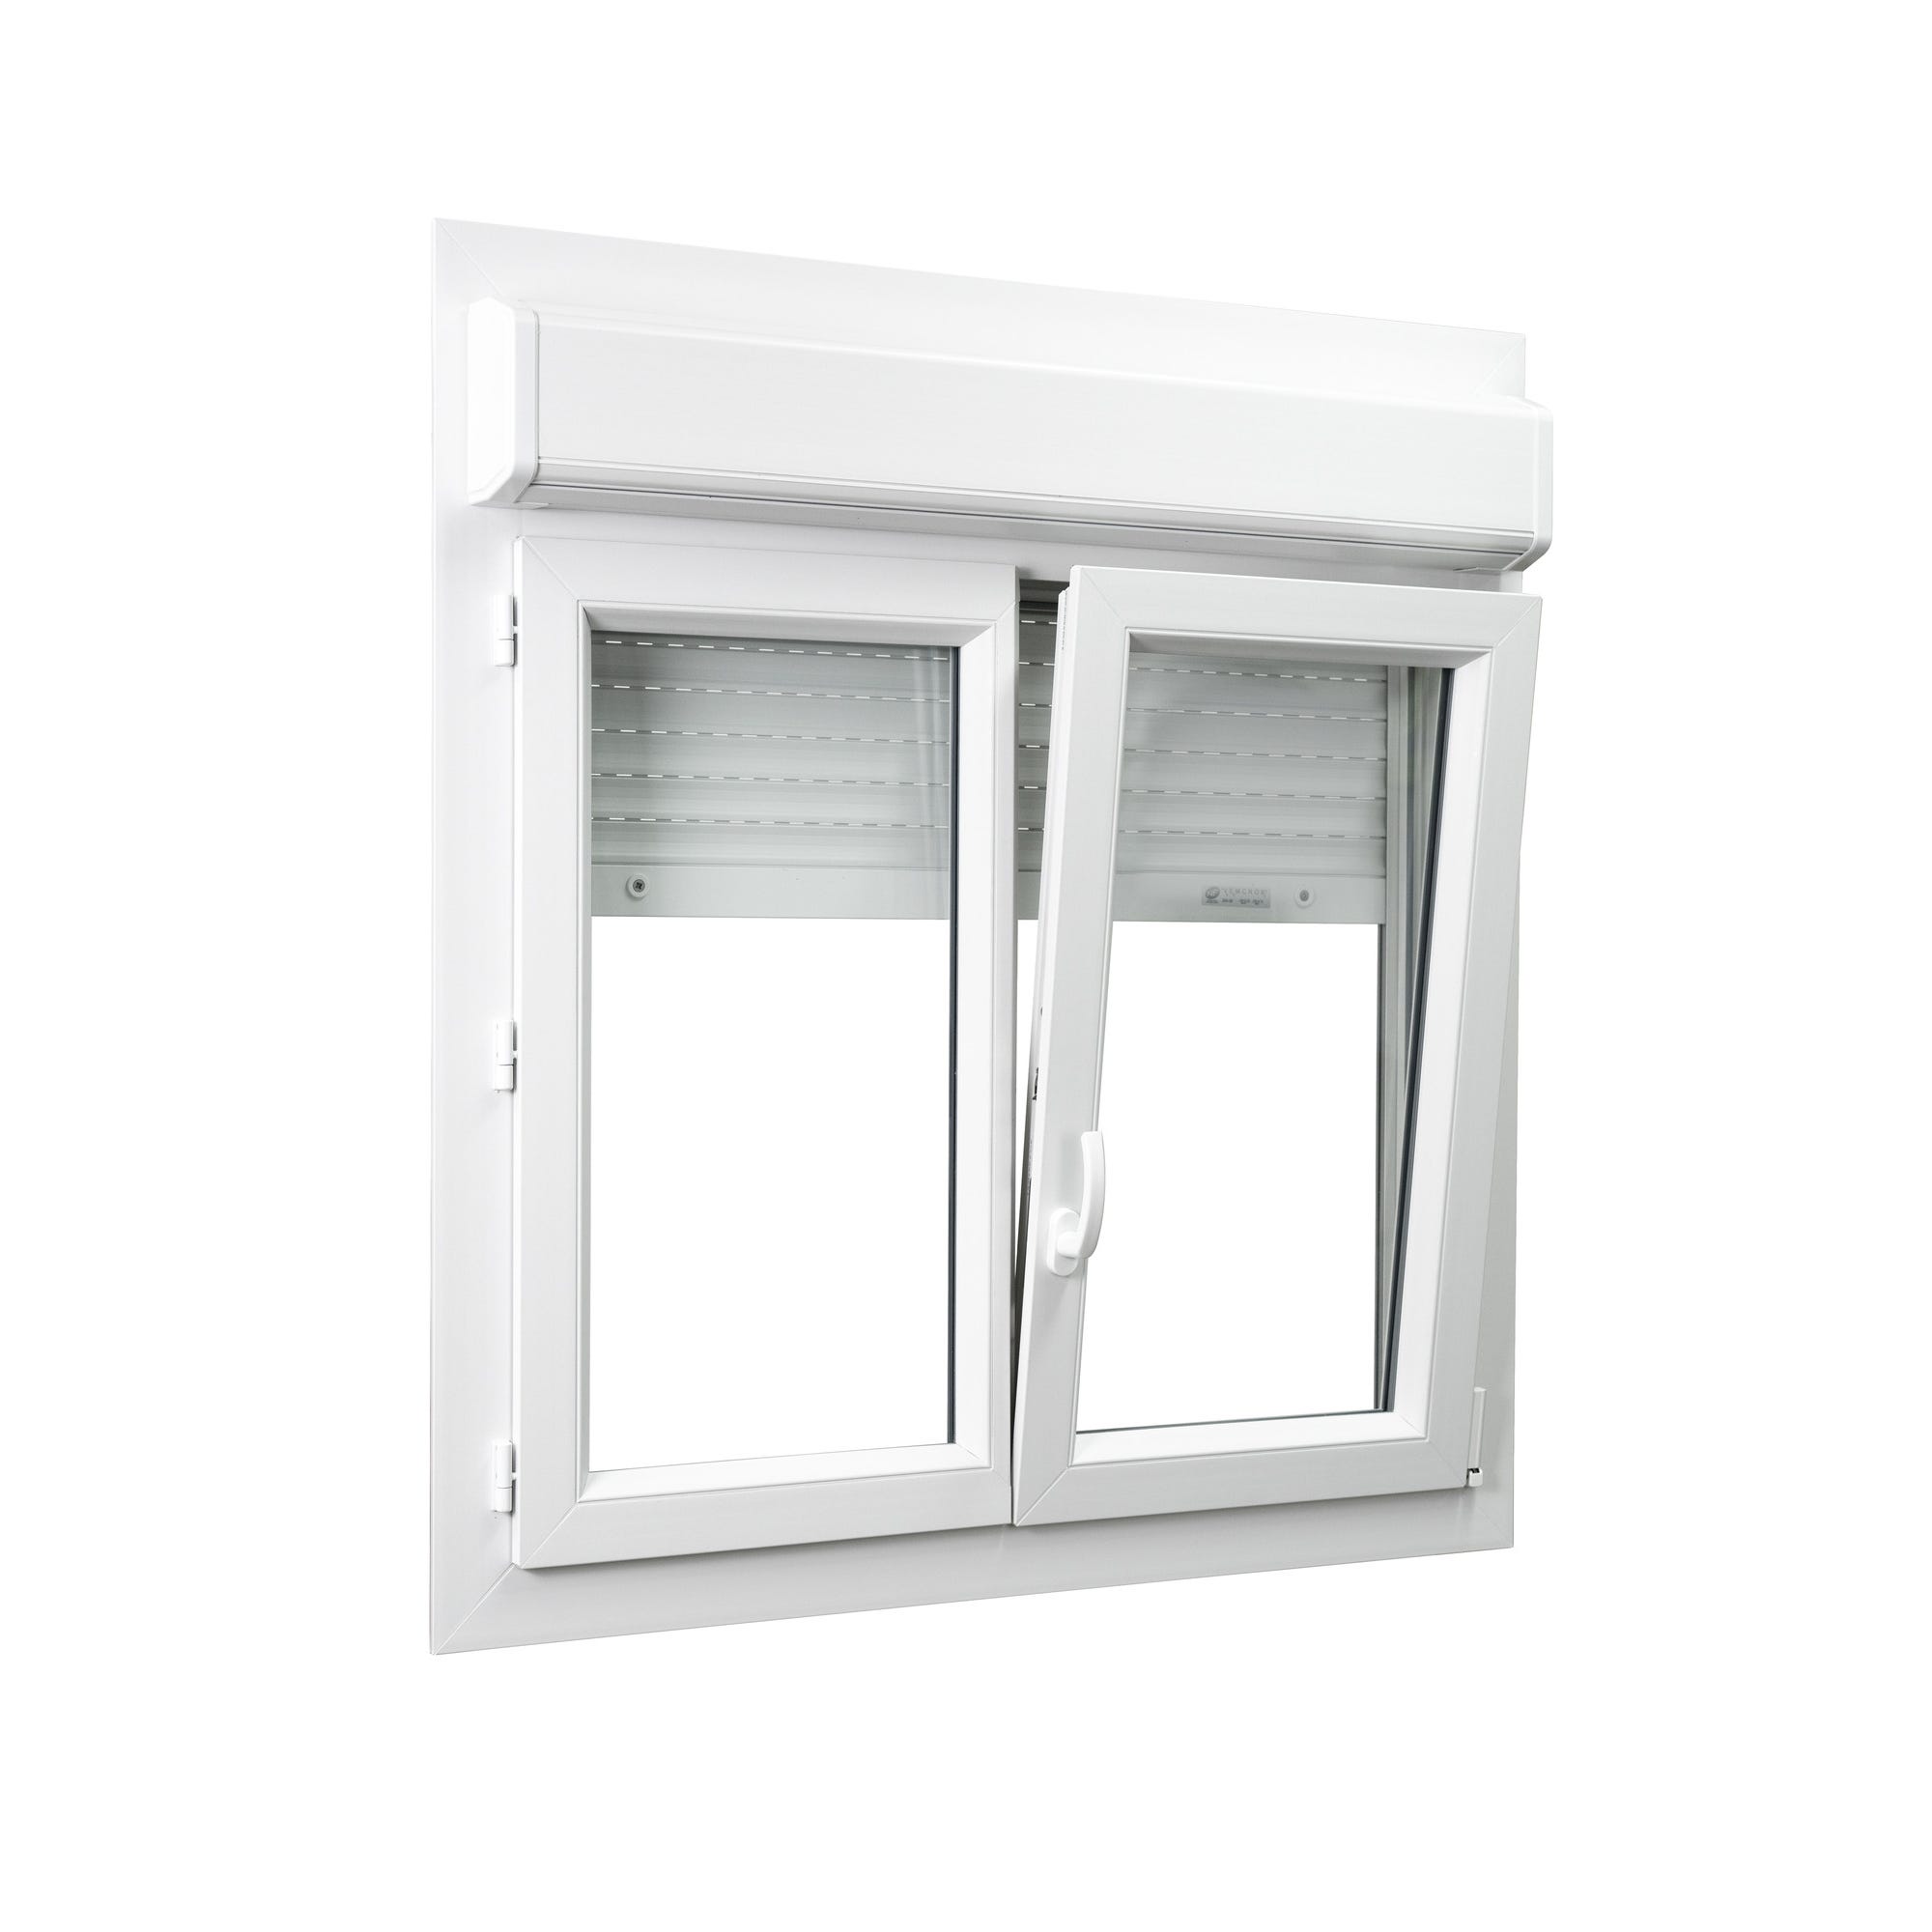 Fenêtre PVC 2 vantaux avec volet roulant intégré monobloc H.115 x l.120 cm - GROSFILLEX 1